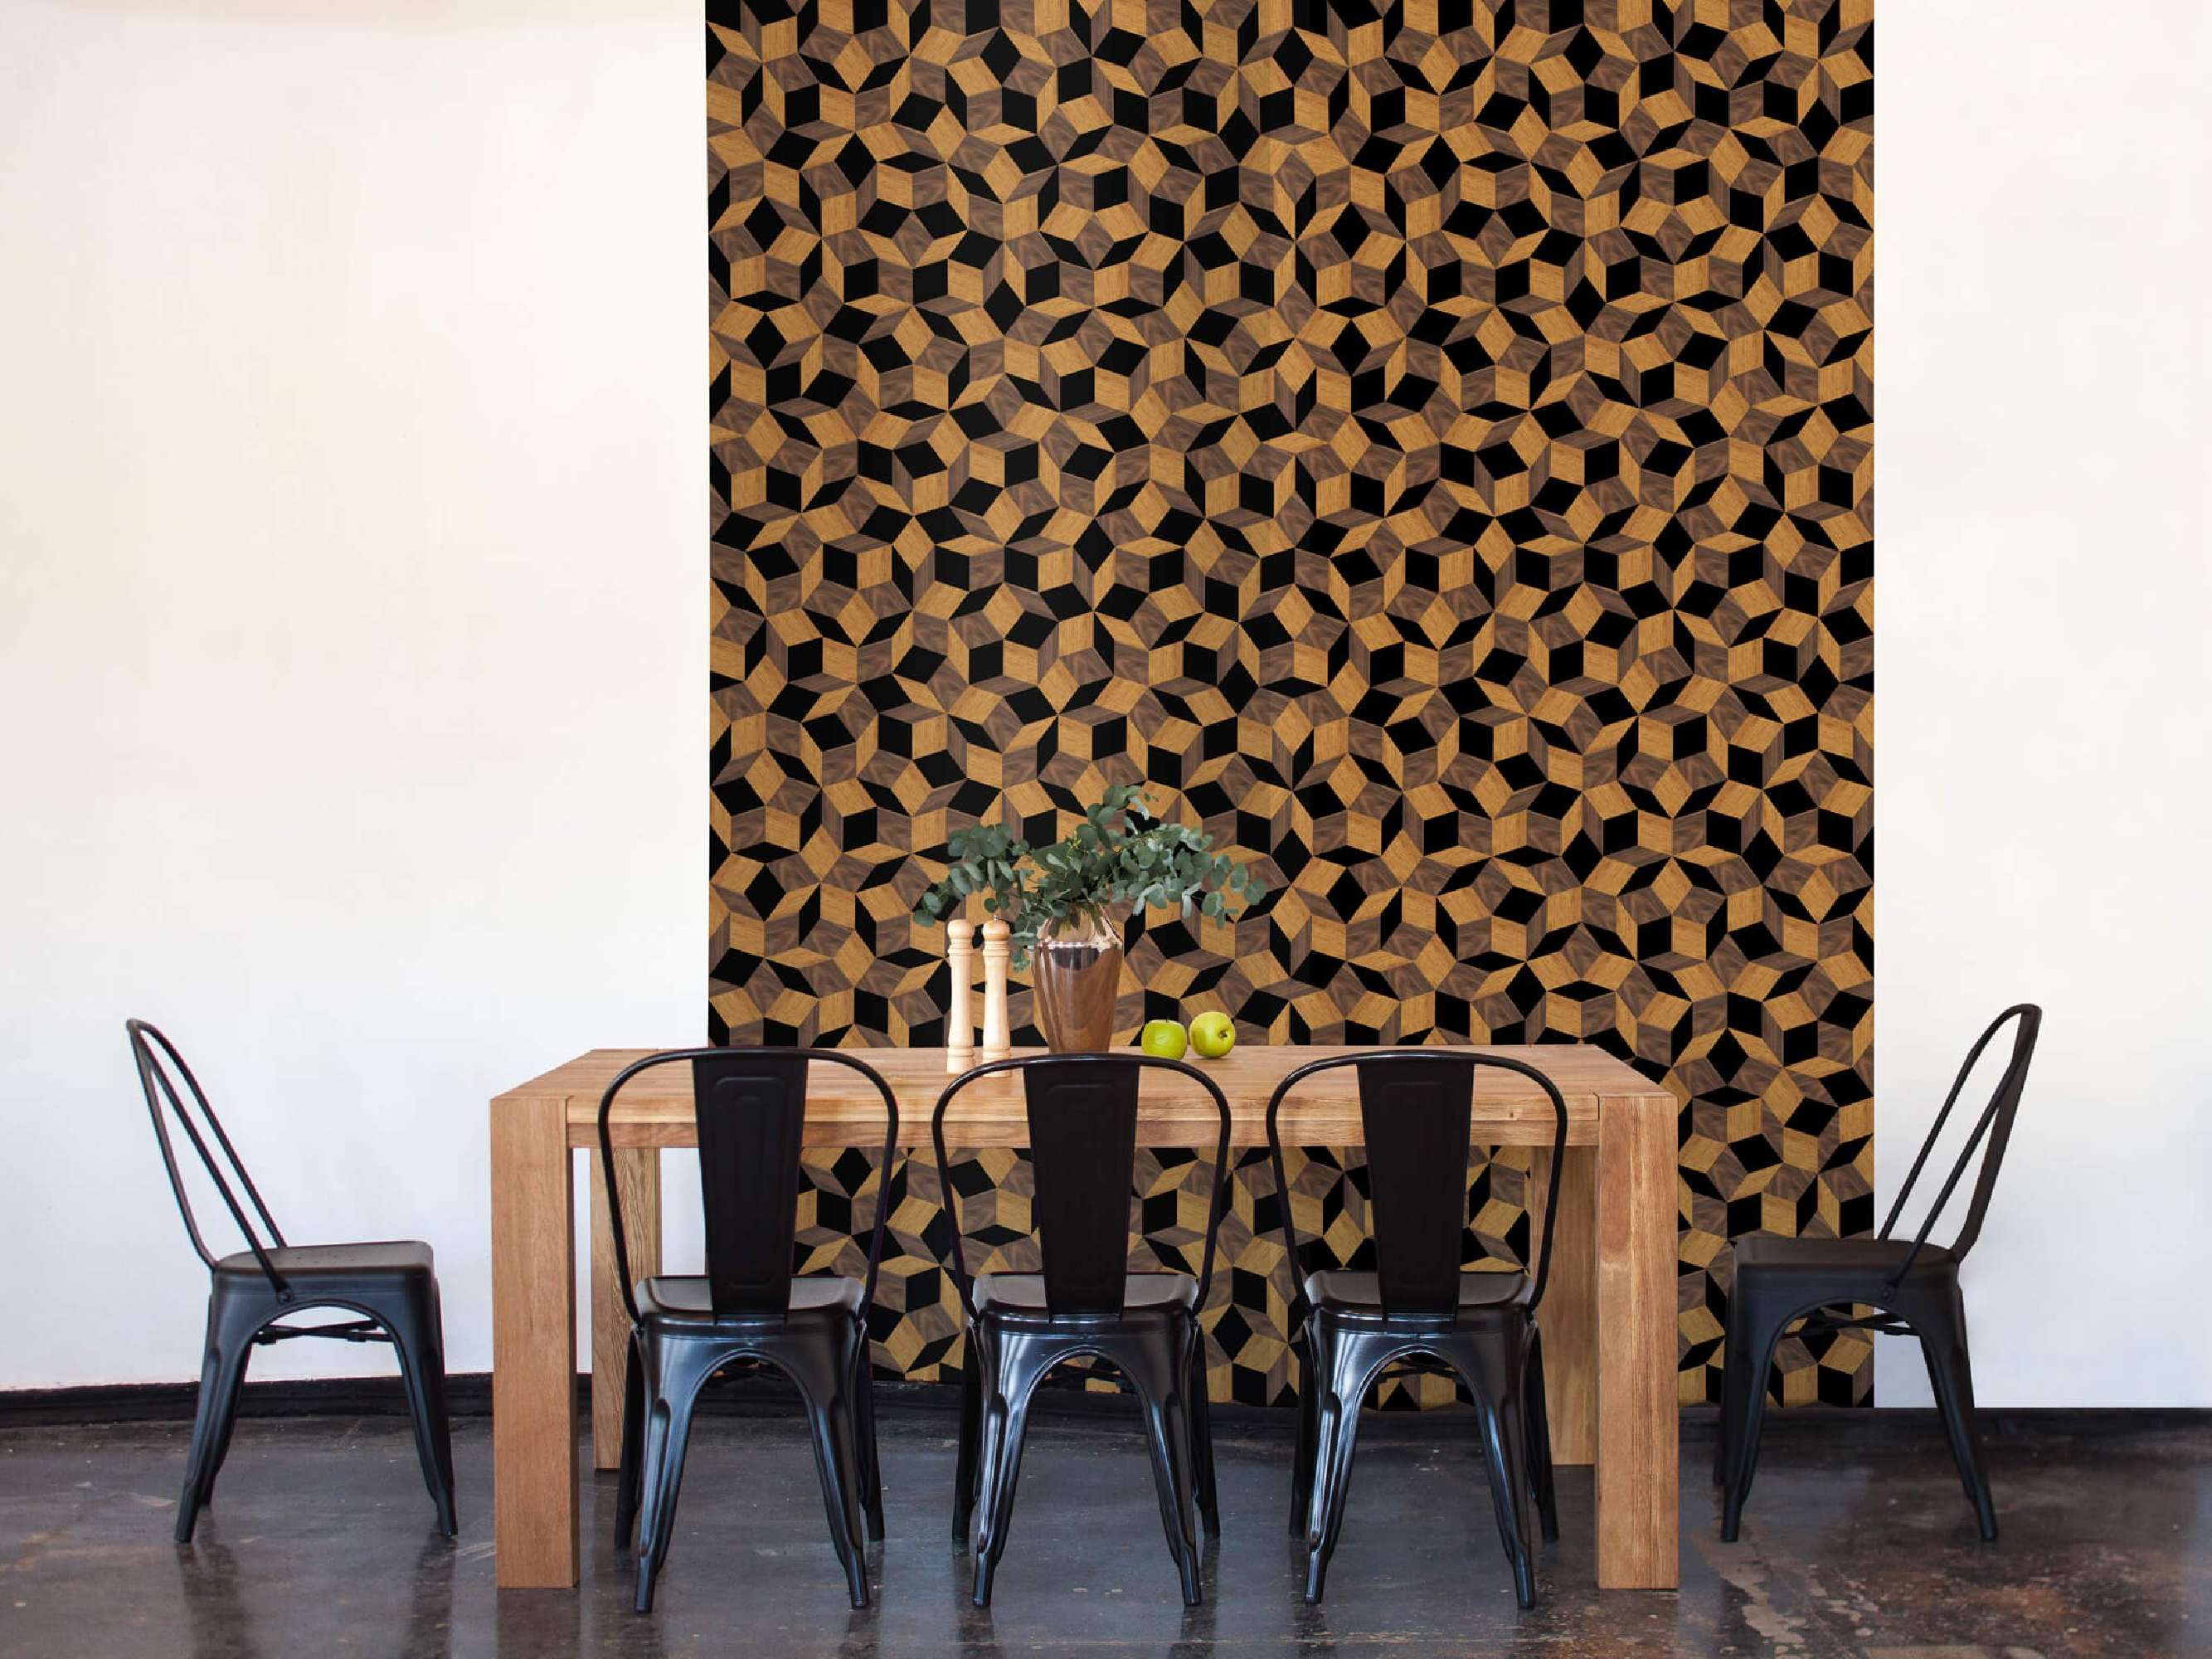 lé de papier peint avec motif géométrique penrose, collé dans une salle à manger, design Ichetkar.